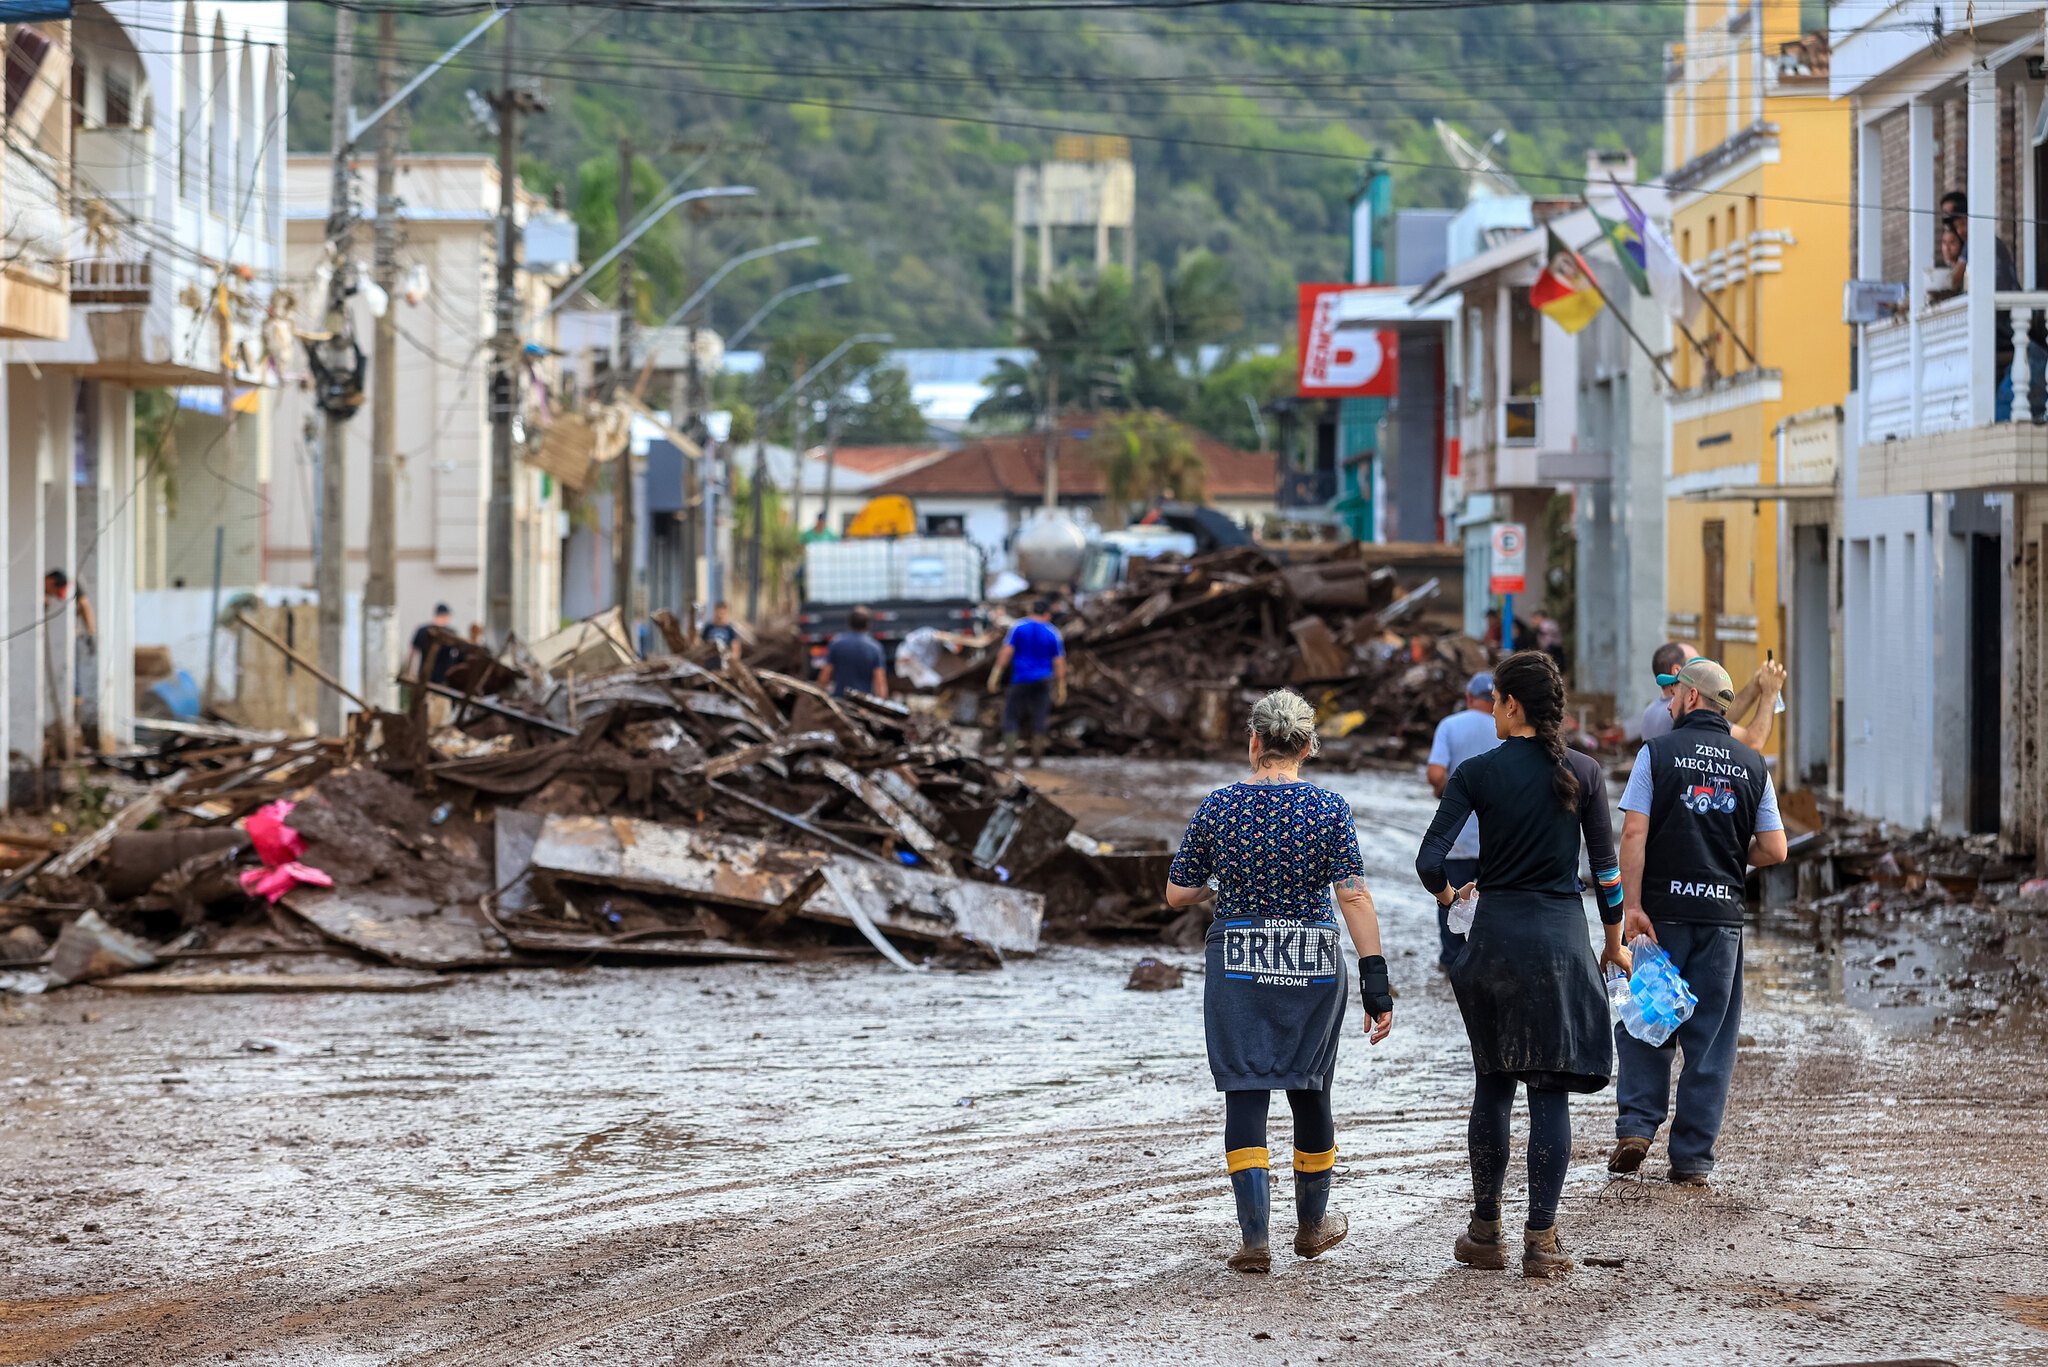 Presidente em exercício, Geraldo Alckmin (PSB) reforçou que municípios vão receber recursos para auxiliar a população que ficou desabrigada com passagem de ciclone